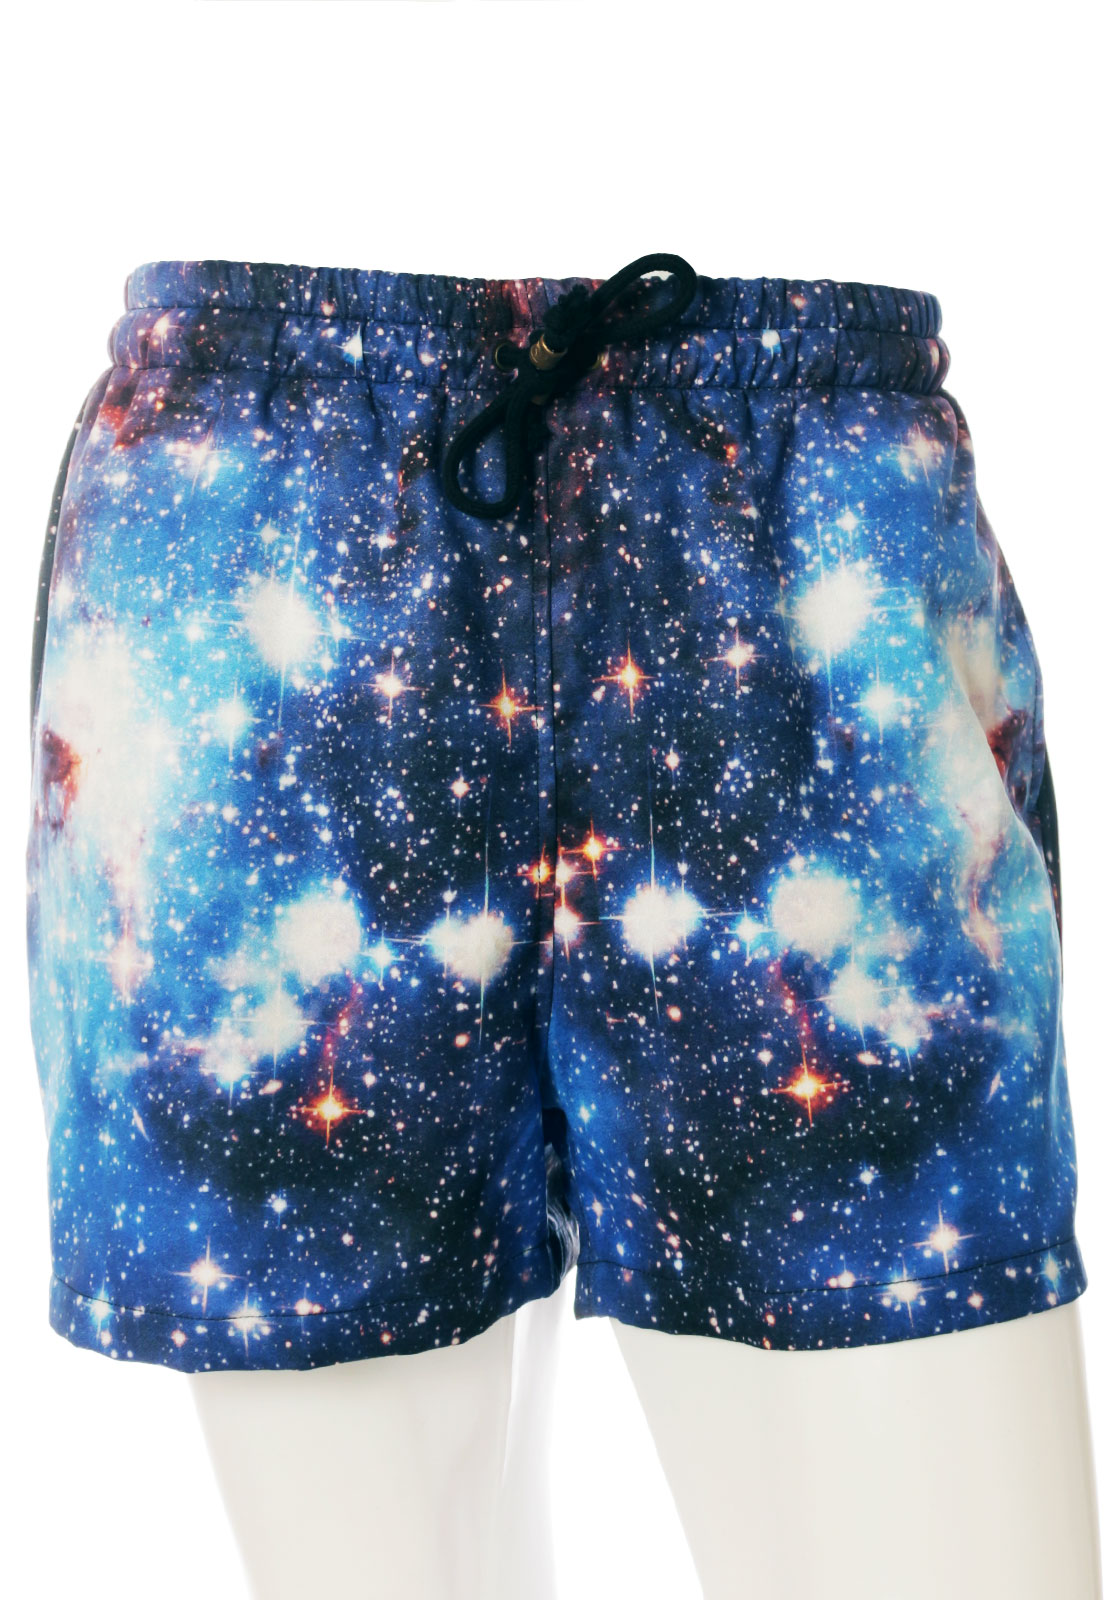 Shorts Estampado Galaxy Sem Gênero Universo Azul